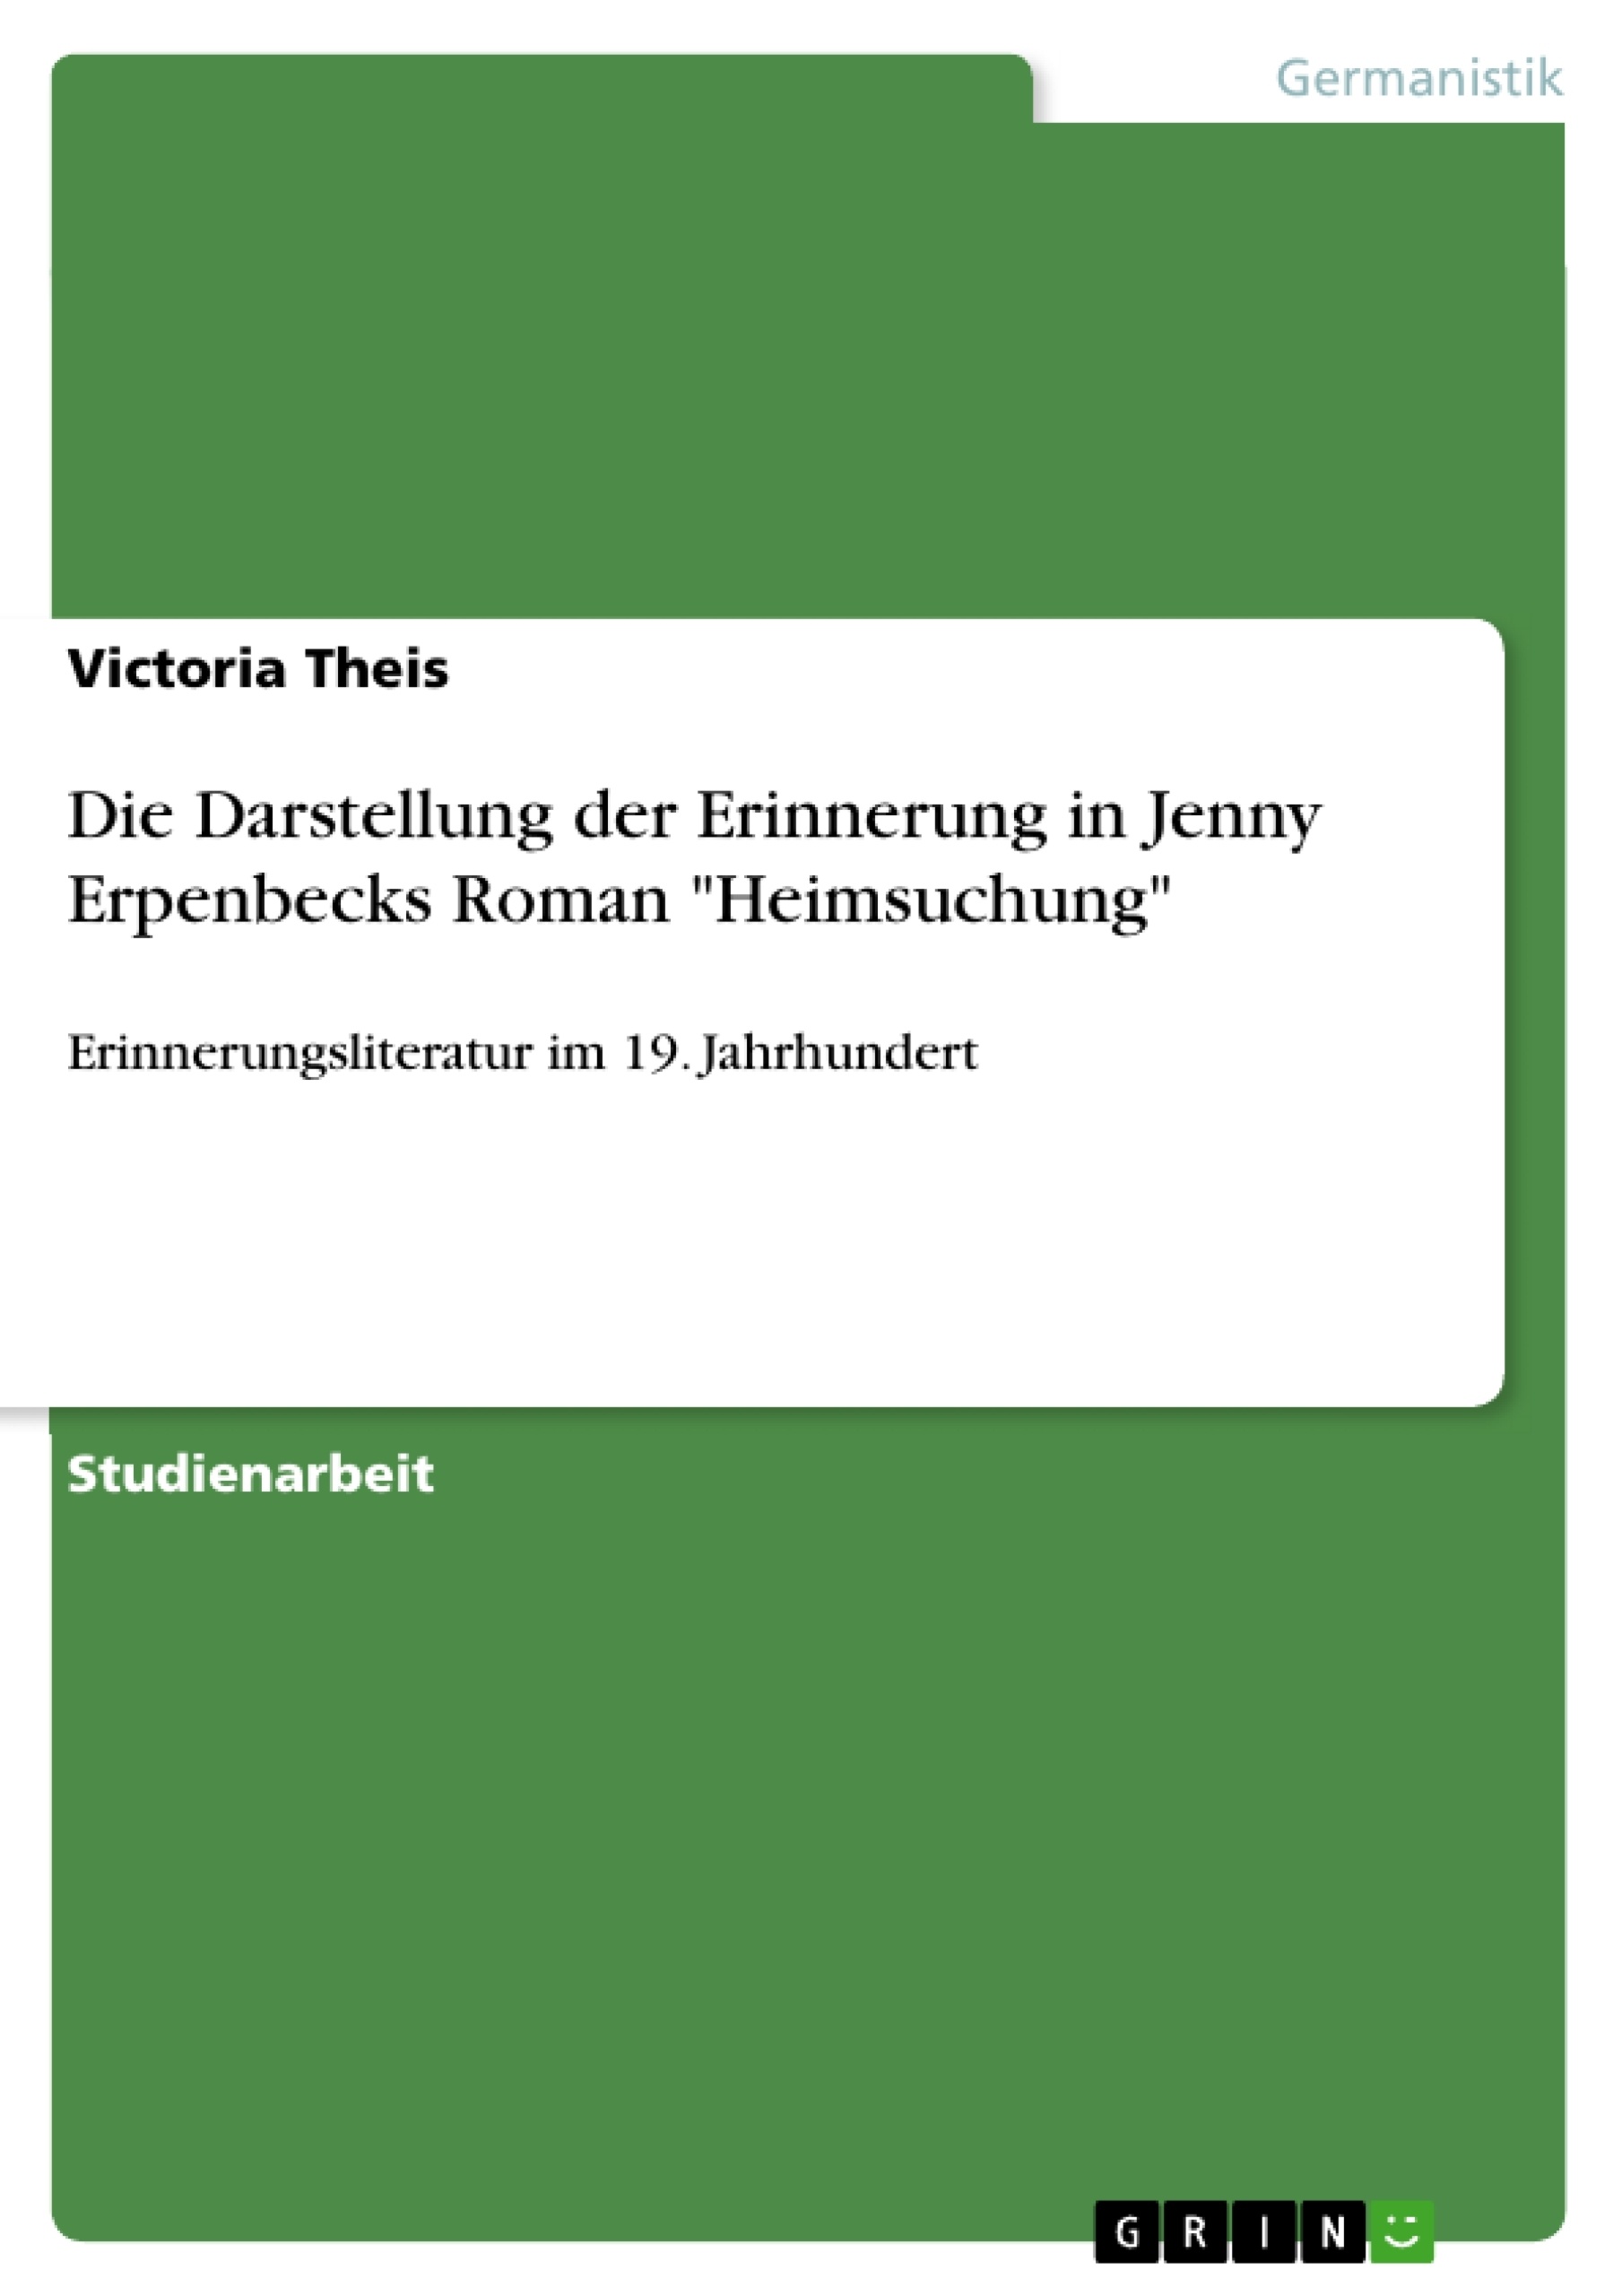 Title: Die Darstellung der Erinnerung in Jenny Erpenbecks Roman "Heimsuchung"